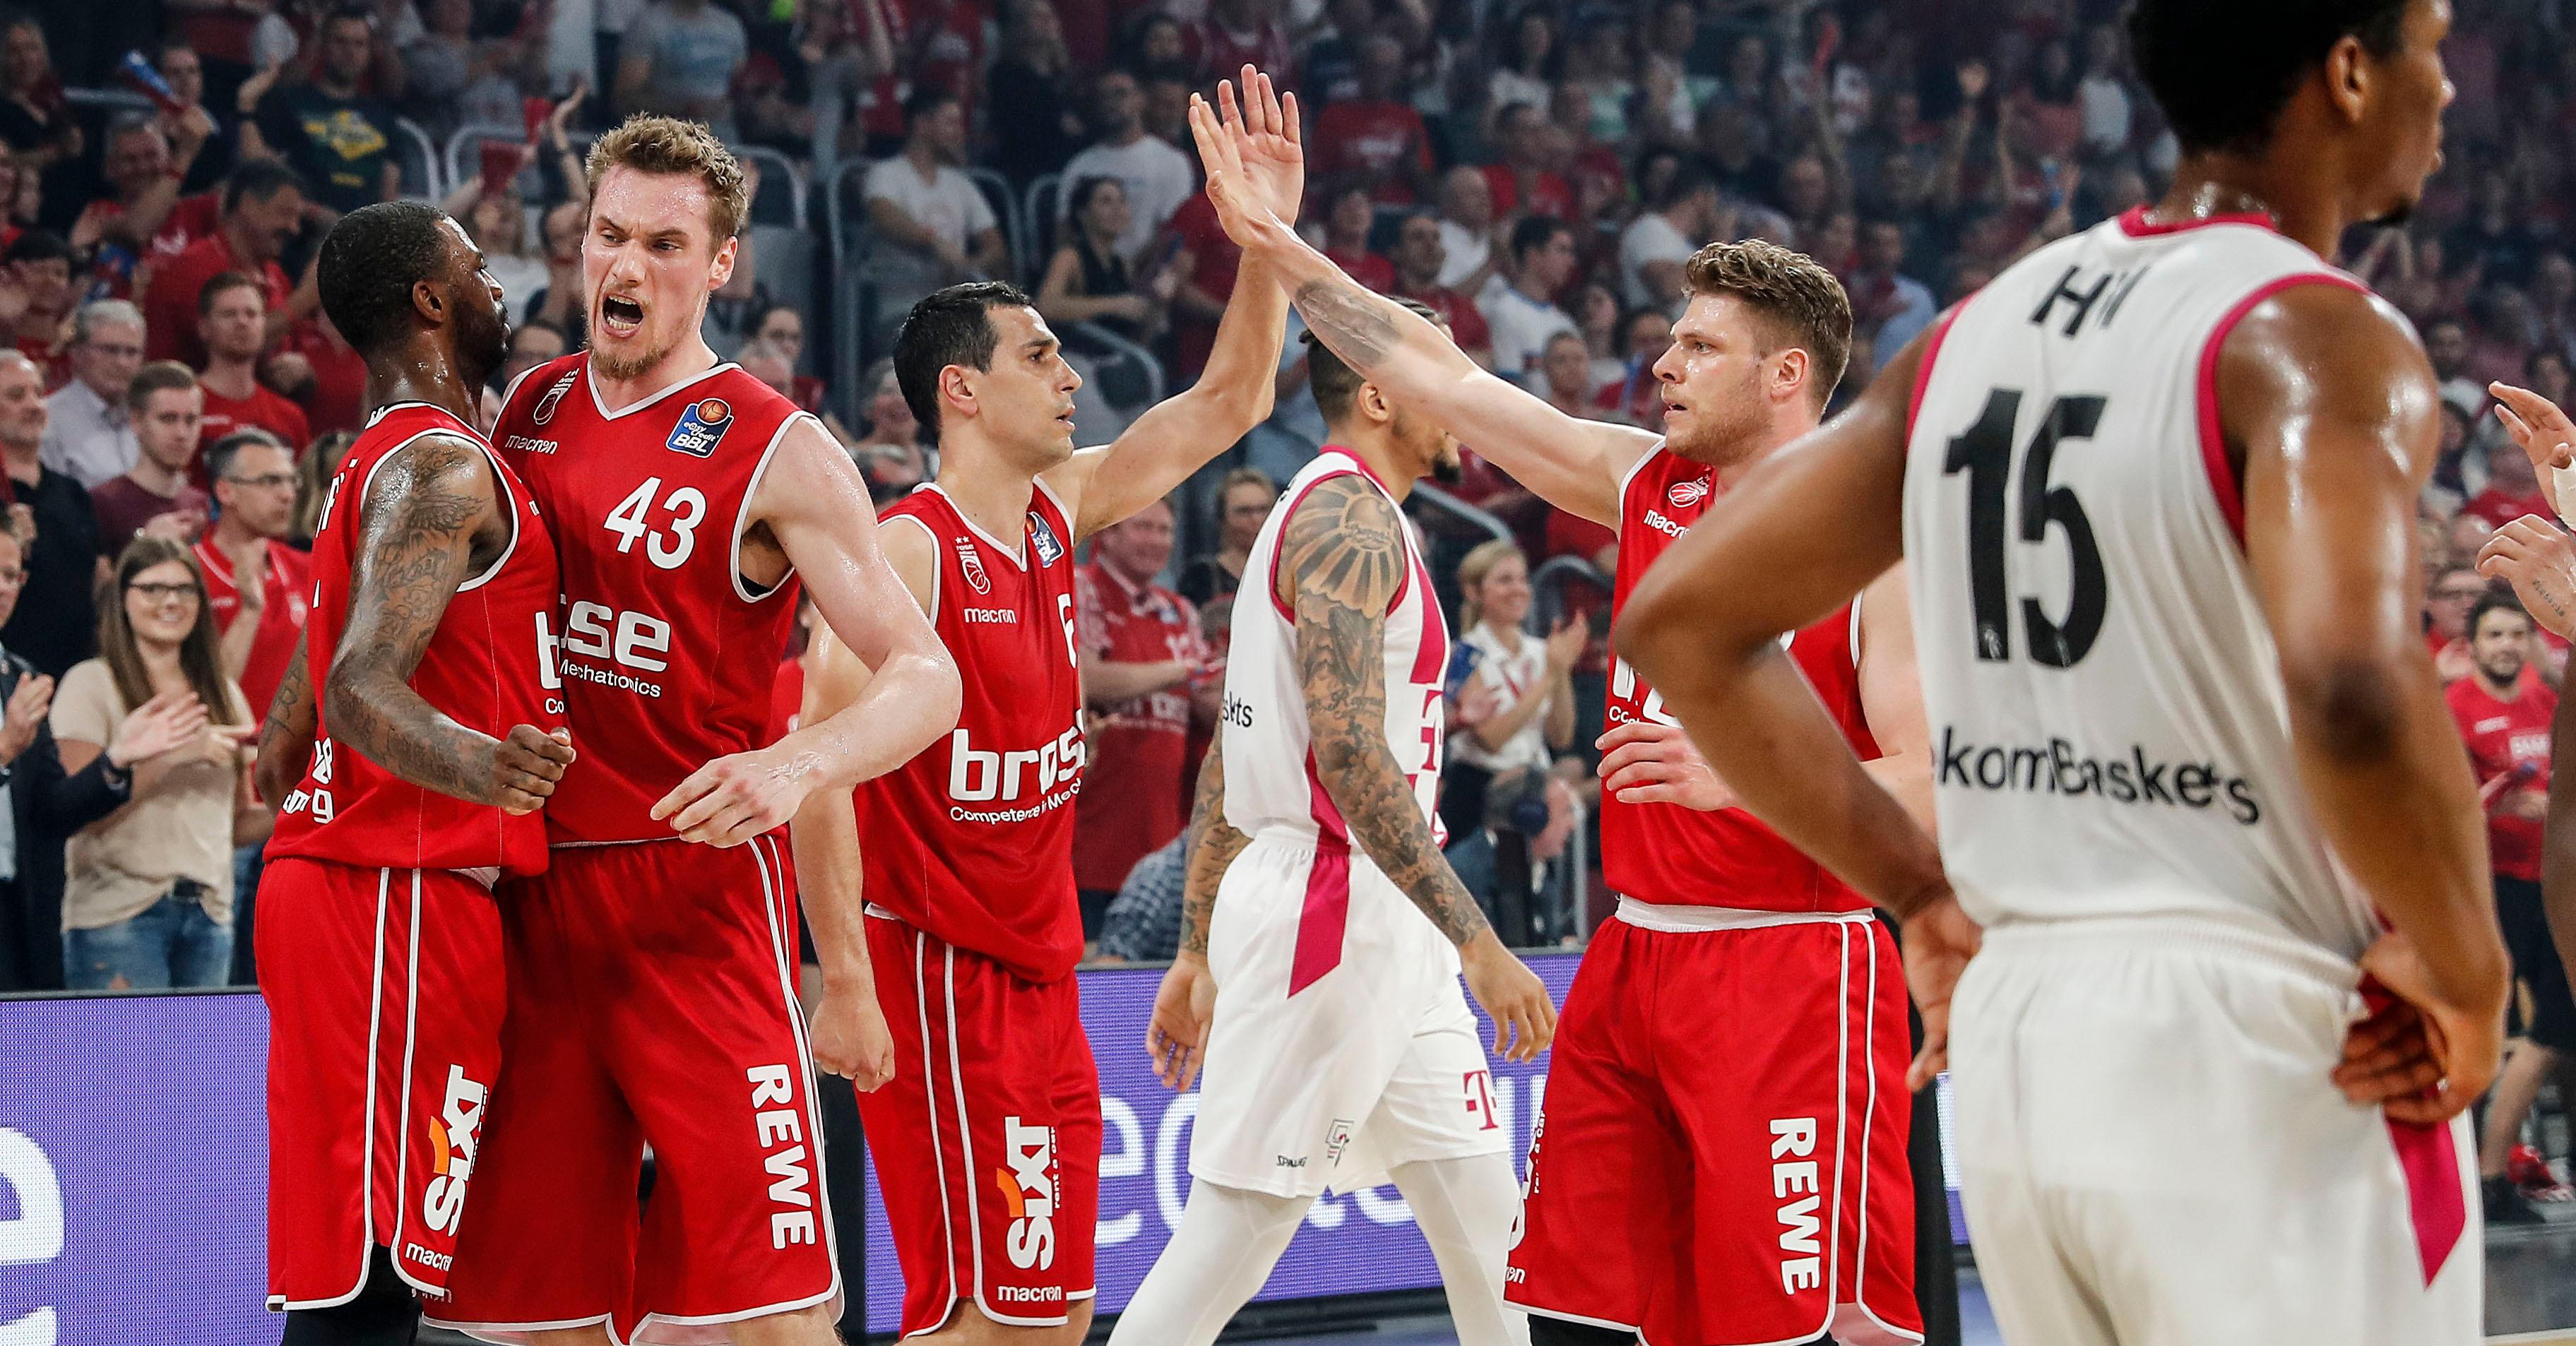  Brose Bamberg wird in den nächsten fünf Jahren an der Basketball Champions League (BCL) teilnehmen. Ein entsprechender Vertrag wurde zwischen Verein und dem vom Basketball-Weltverband FIBA ausgetragenen Wettbewerb geschlossen. 